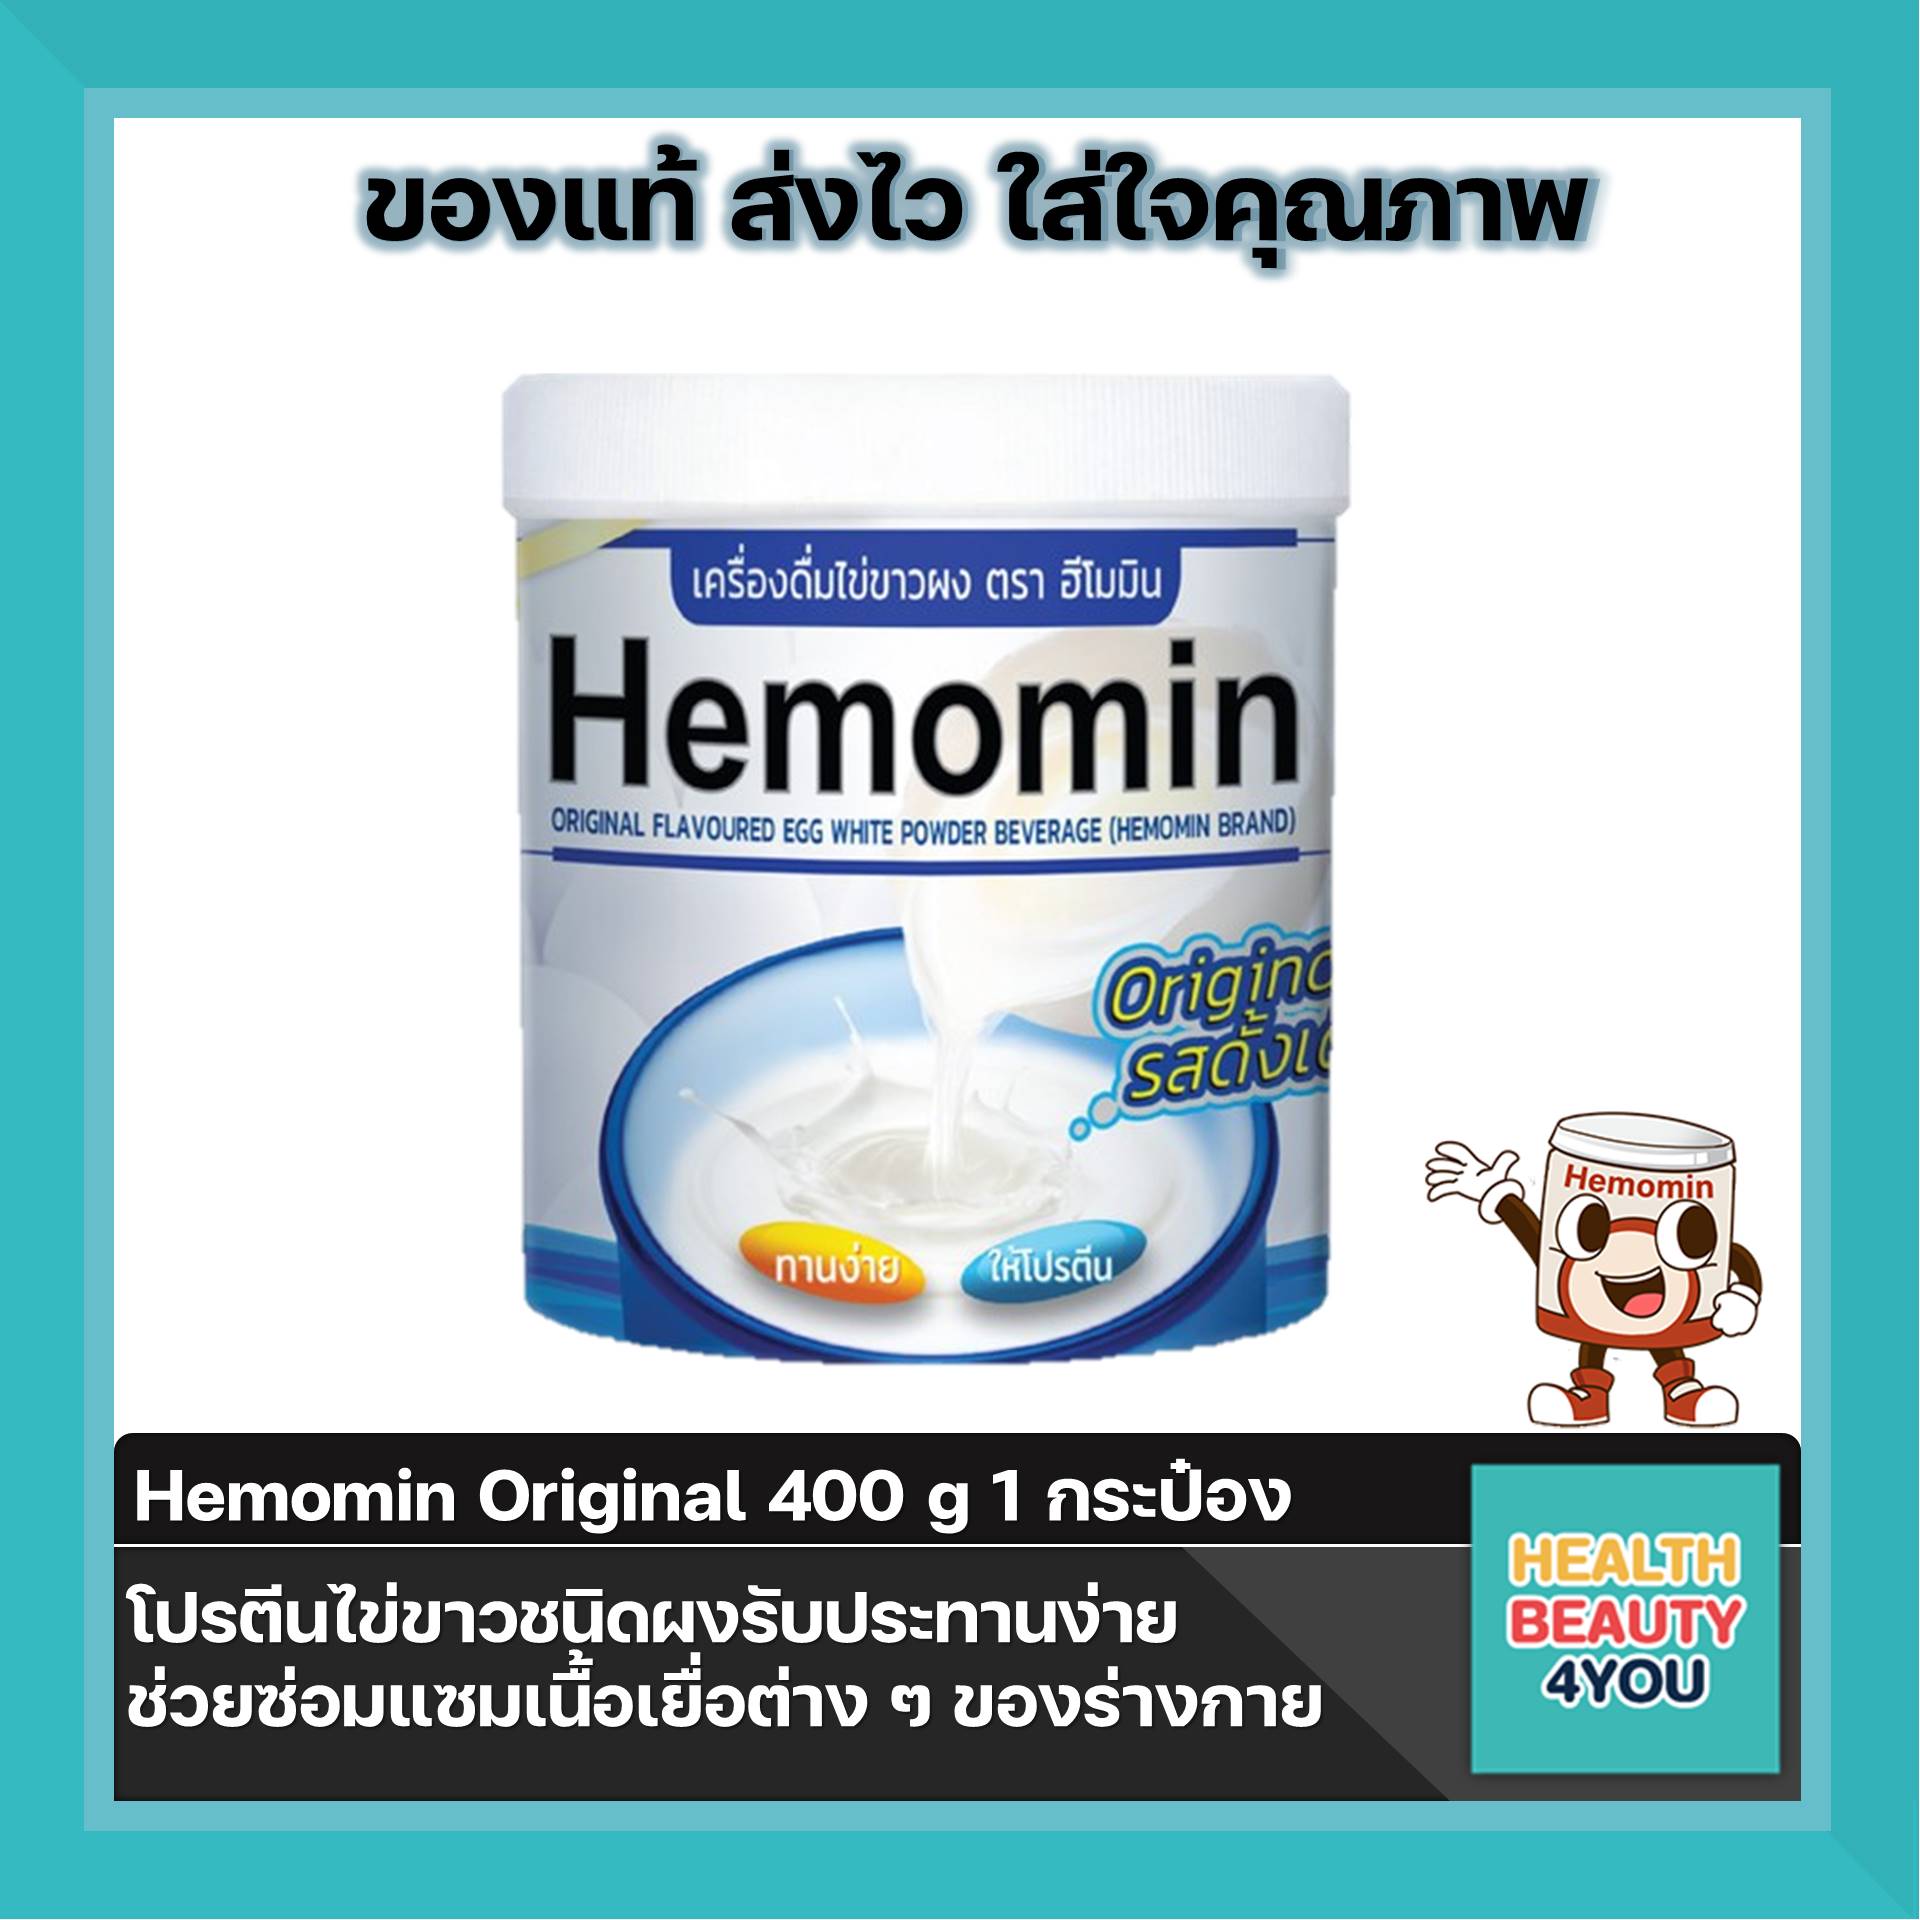 Hemomin ฮีโมมิน โปรตีนไข่ขาว ชนิดผง 400 กรัม (รสดั้งเดิม) จำนวน 1 กระป๋อง